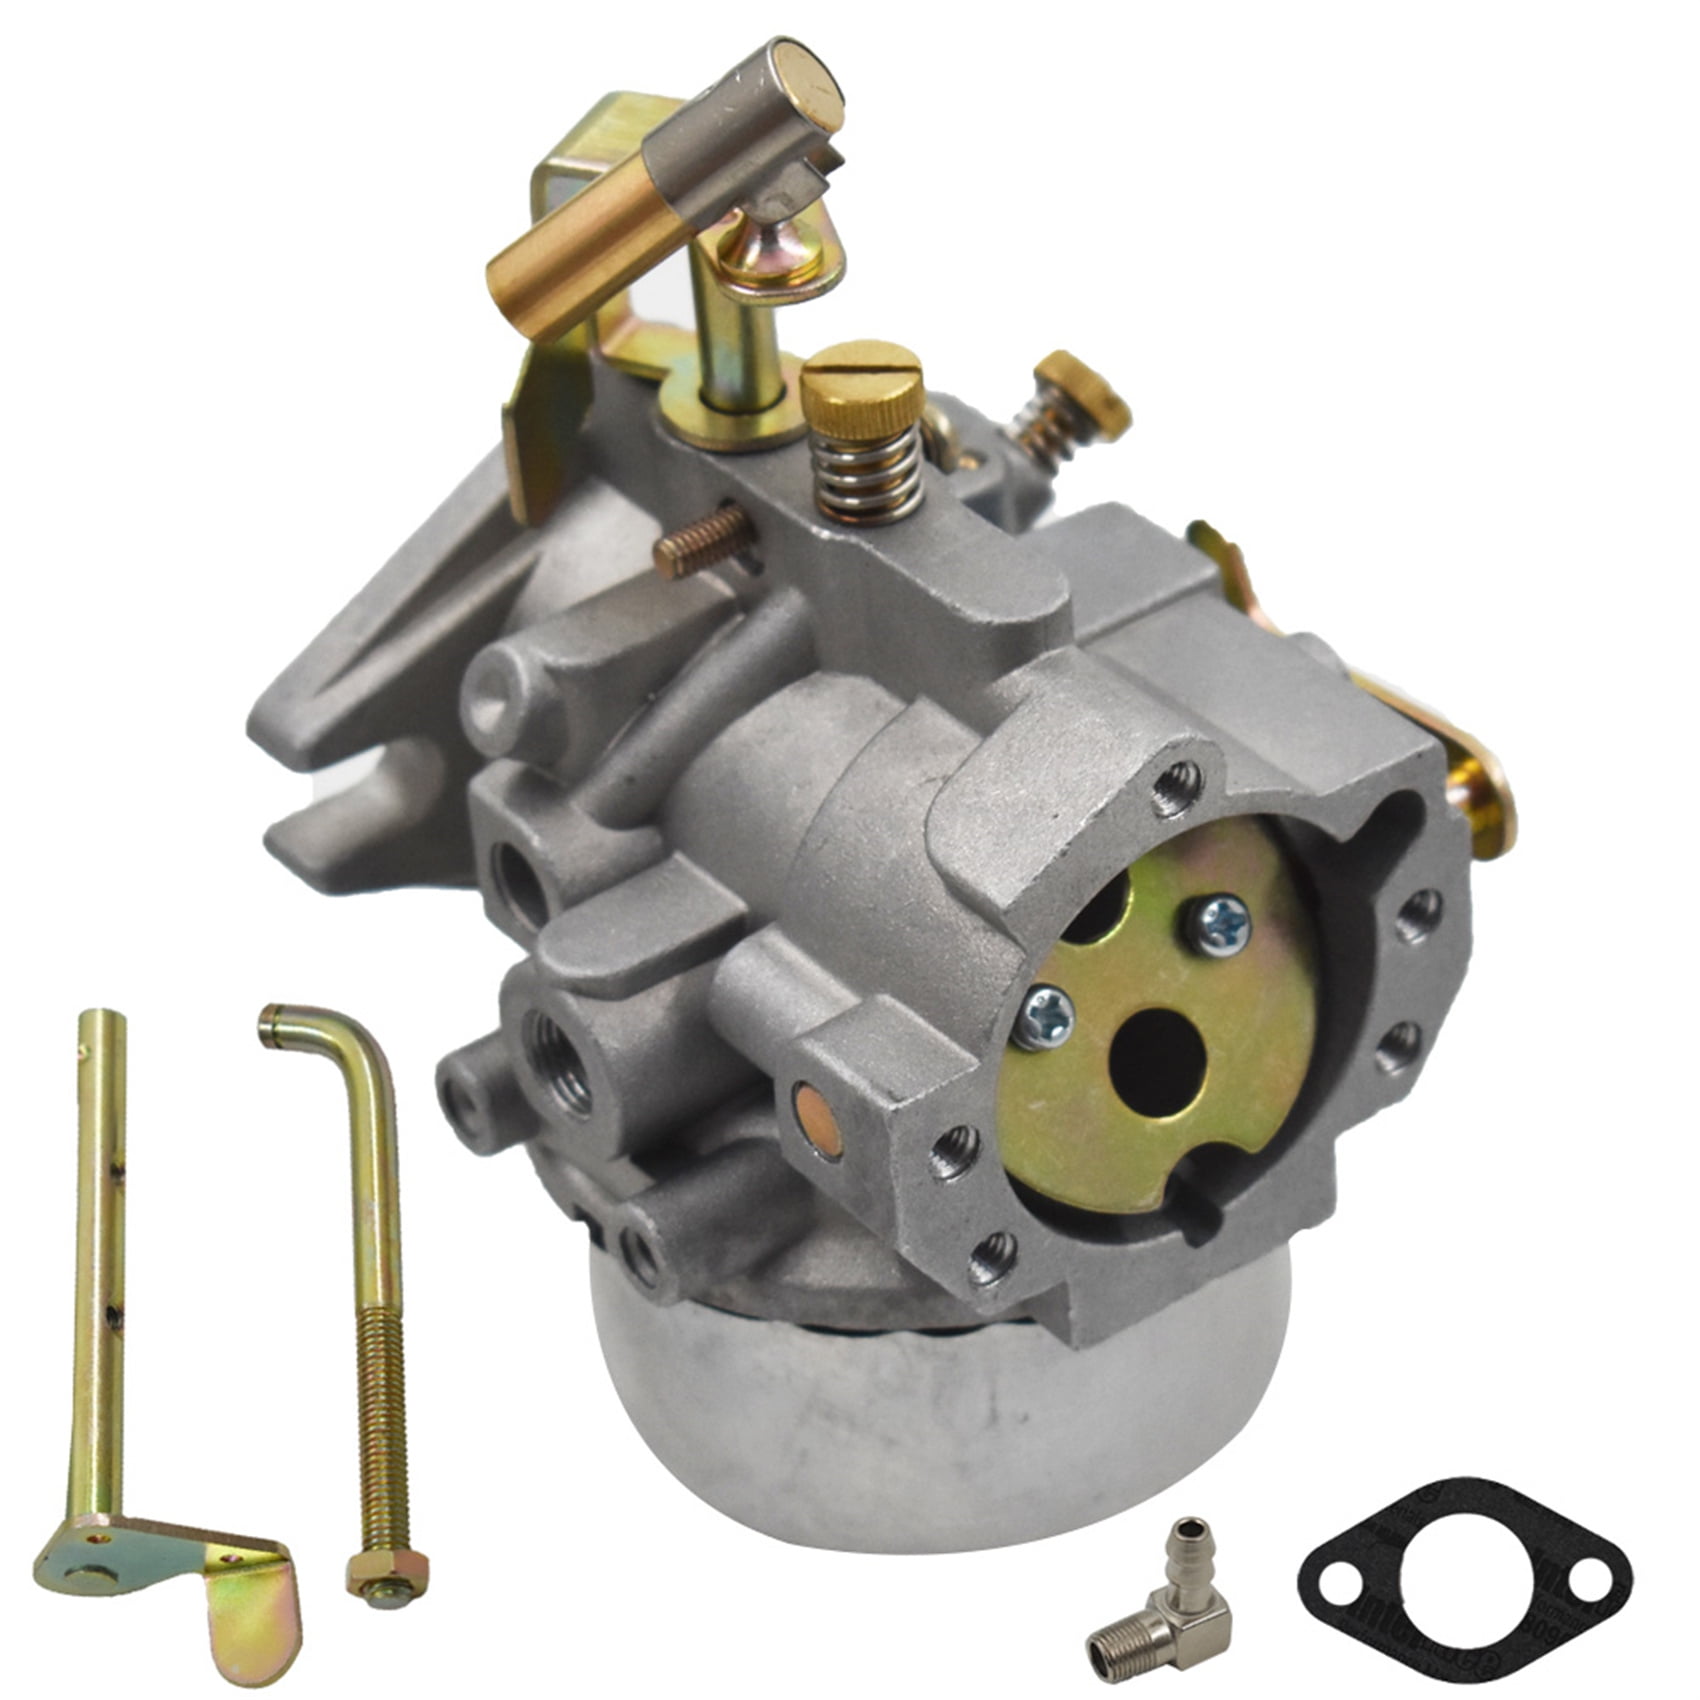 ALL-CARB Carburetor for Kohler 10HP K241 K301 12HP with Choke Shafts Mounting Gasket 